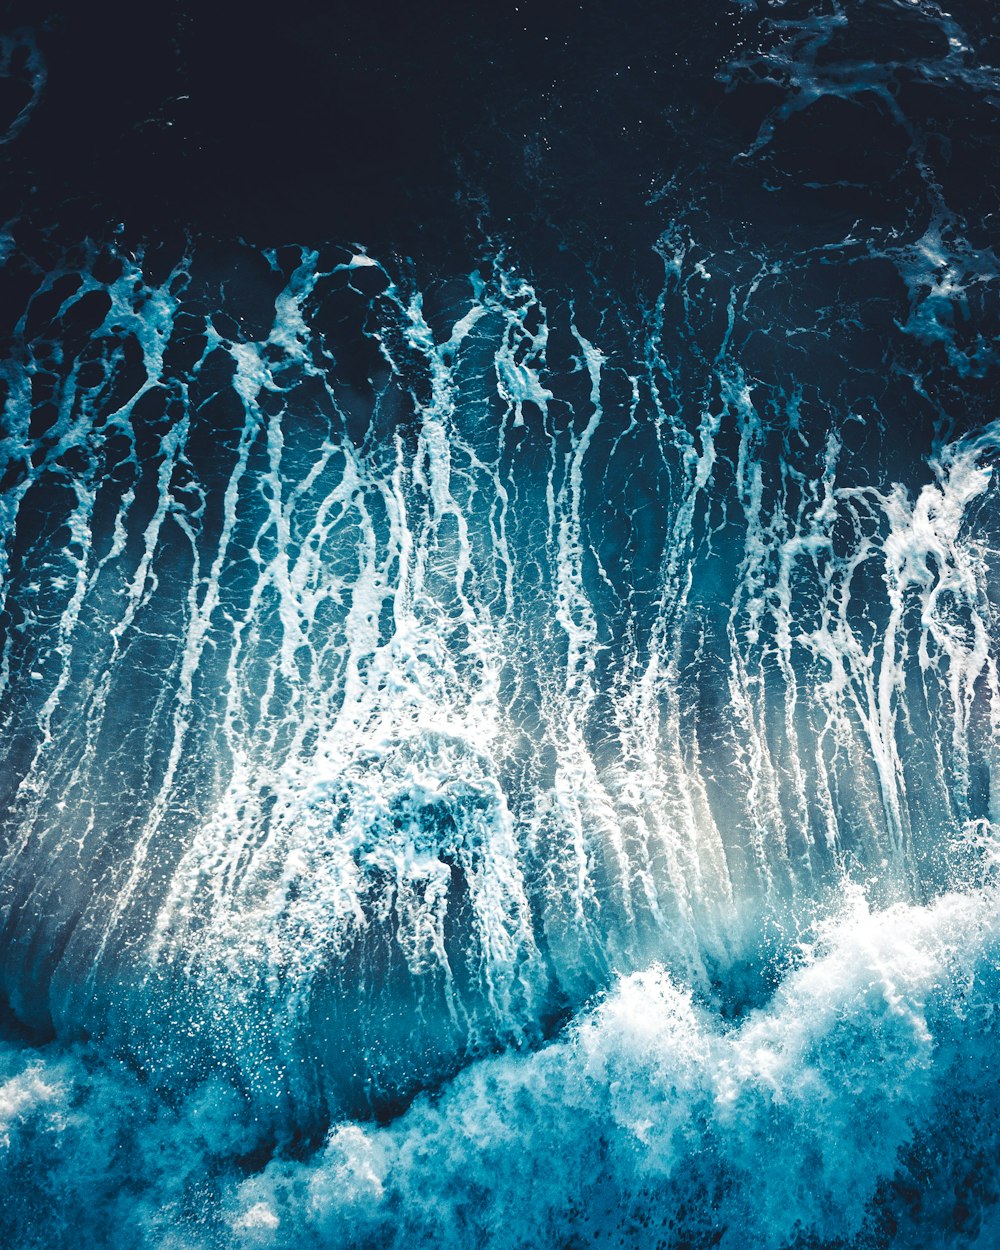 onde d'acqua blu e bianche